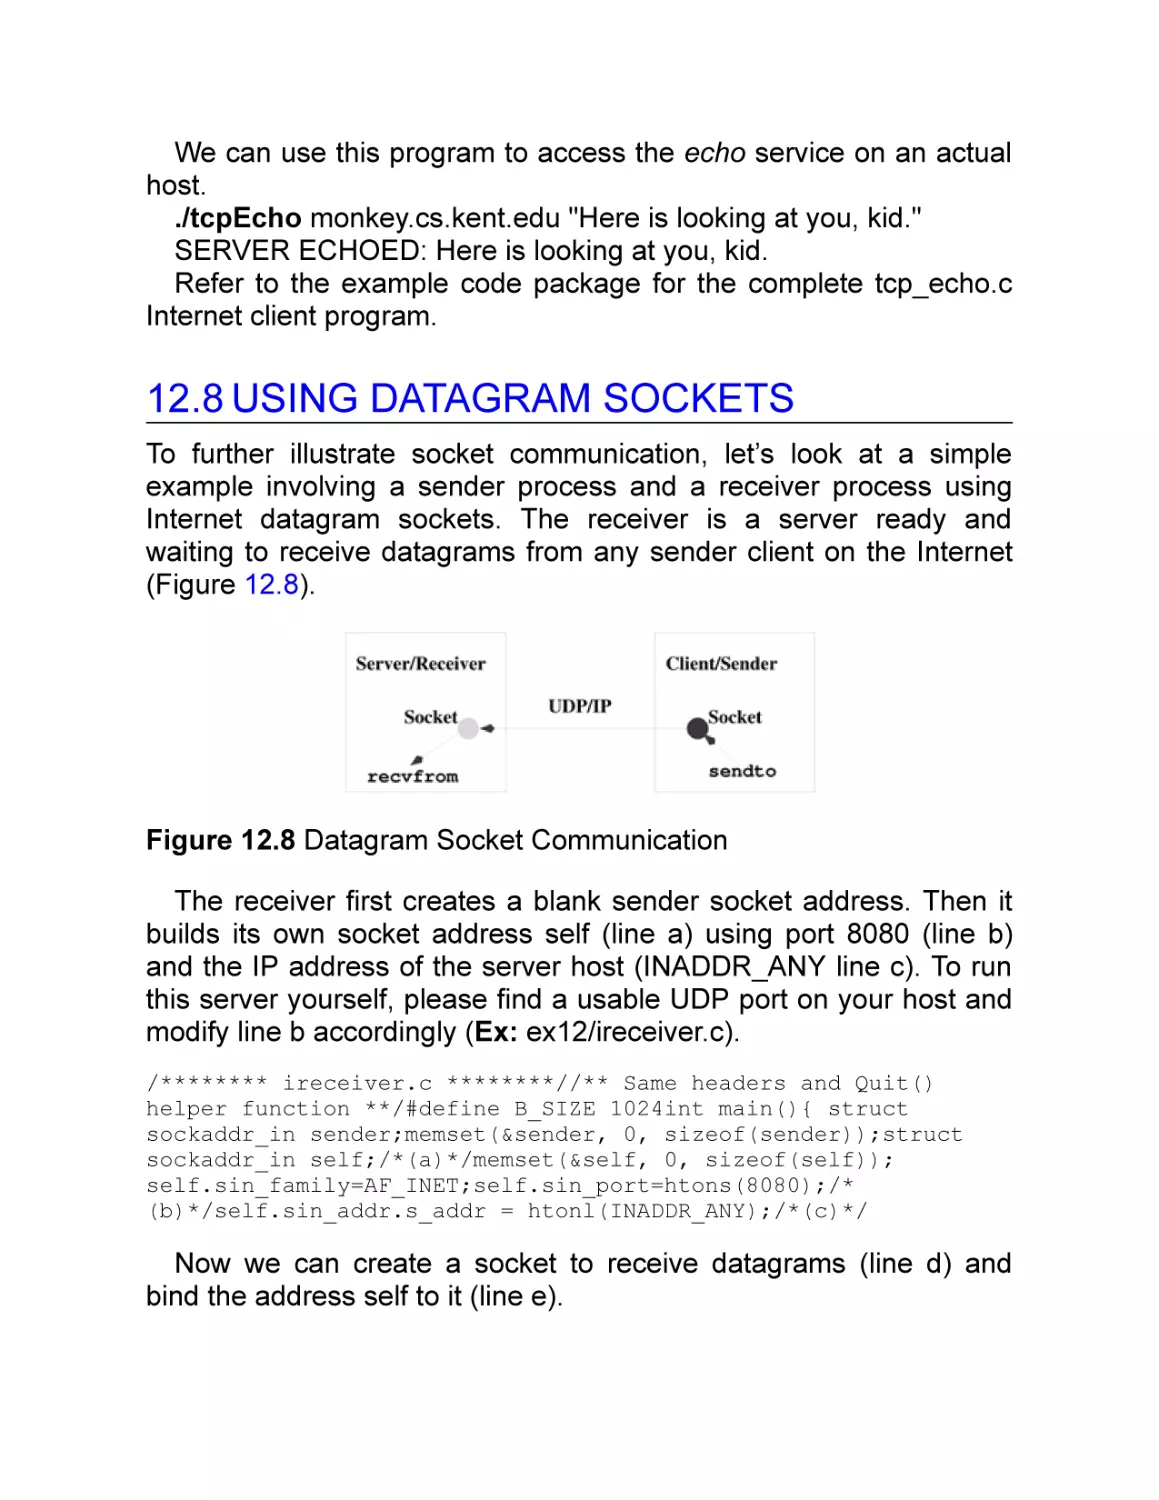 12.8 Using Datagram Sockets